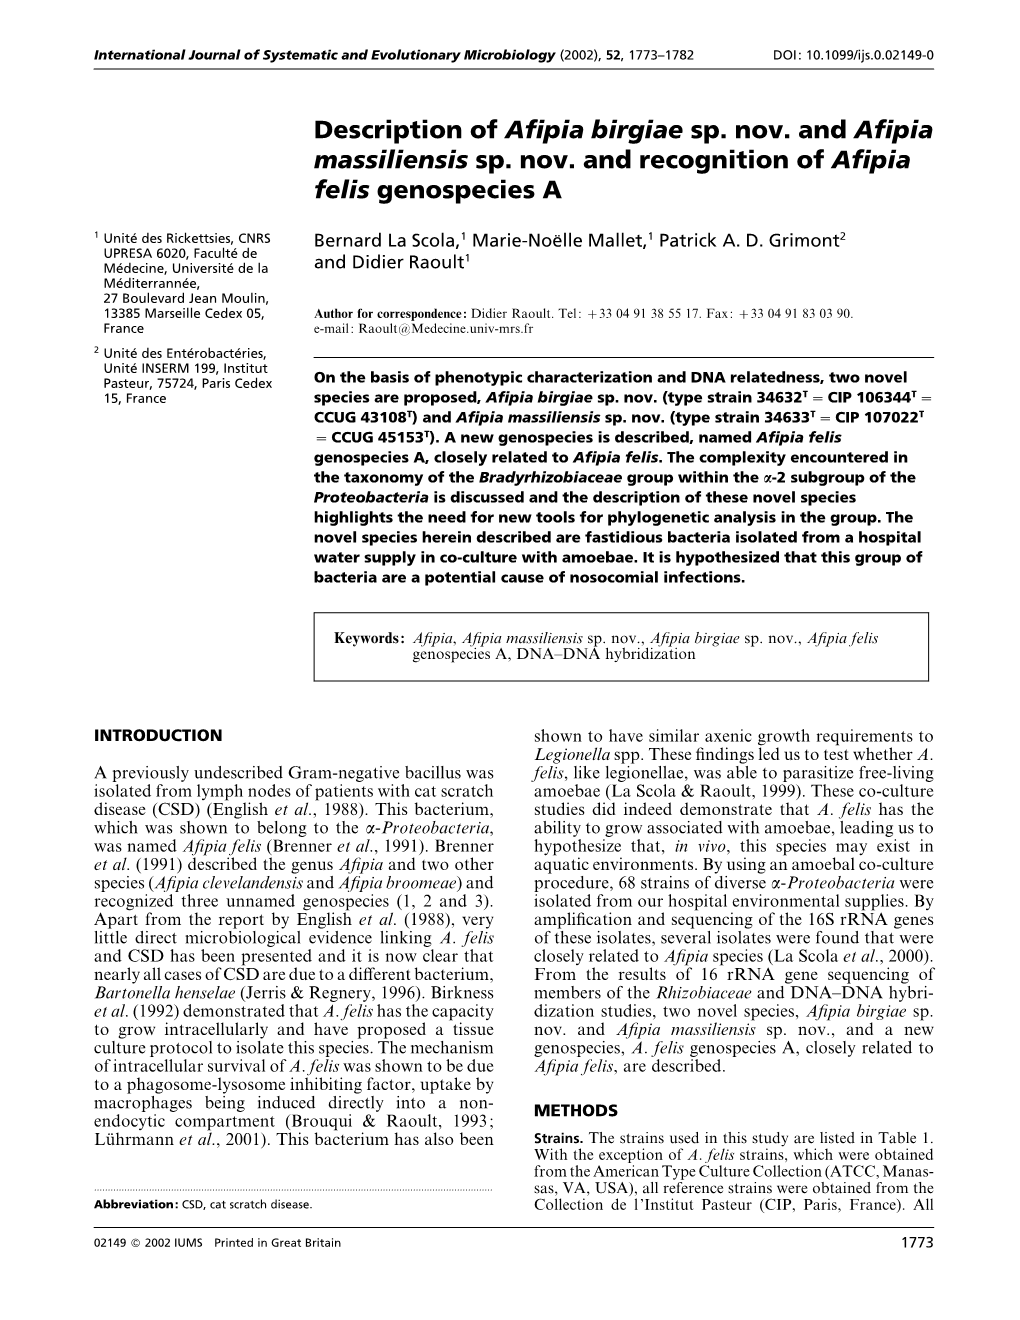 Description of Afipia Birgiae Sp. Nov. and Afipia Massiliensis Sp. Nov. and Recognition of Afipia Felis Genospecies A